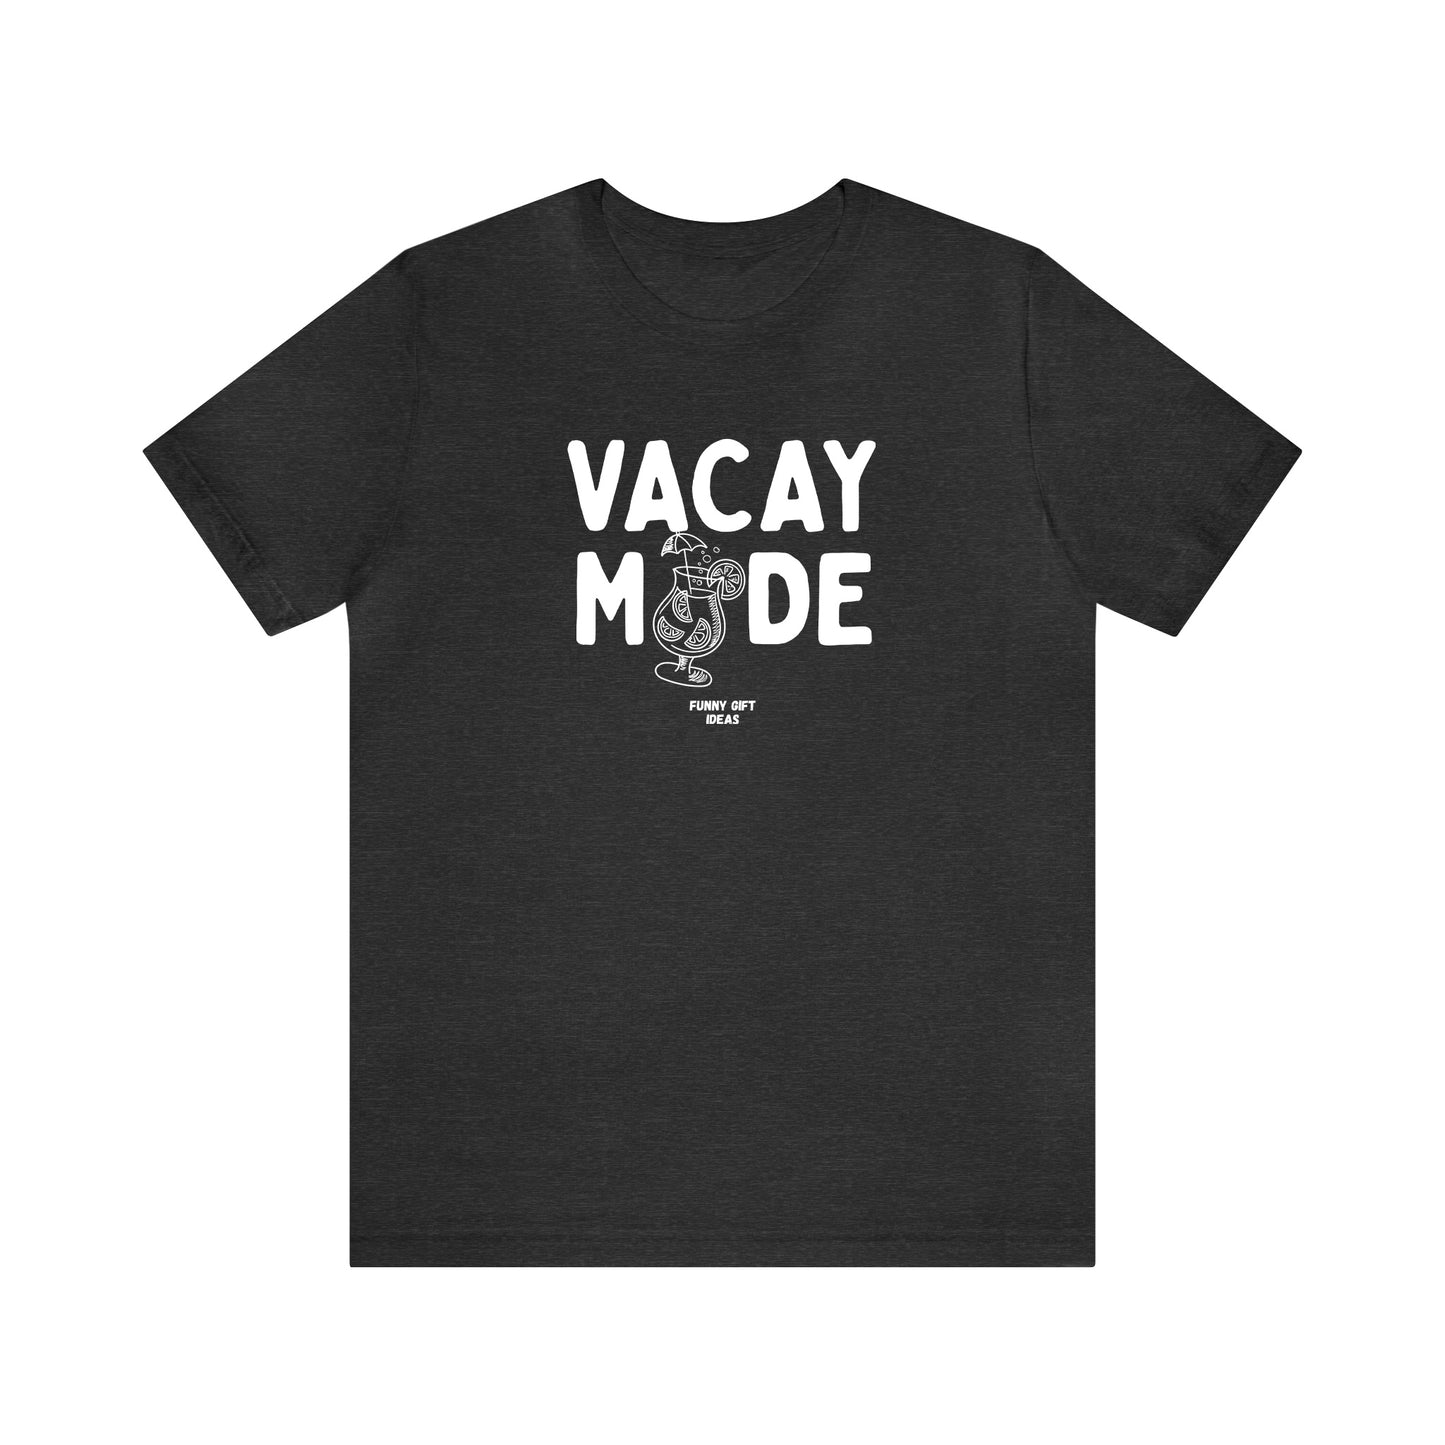 Funny Shirts for Women - Vacay Mode - Women's T Shirts